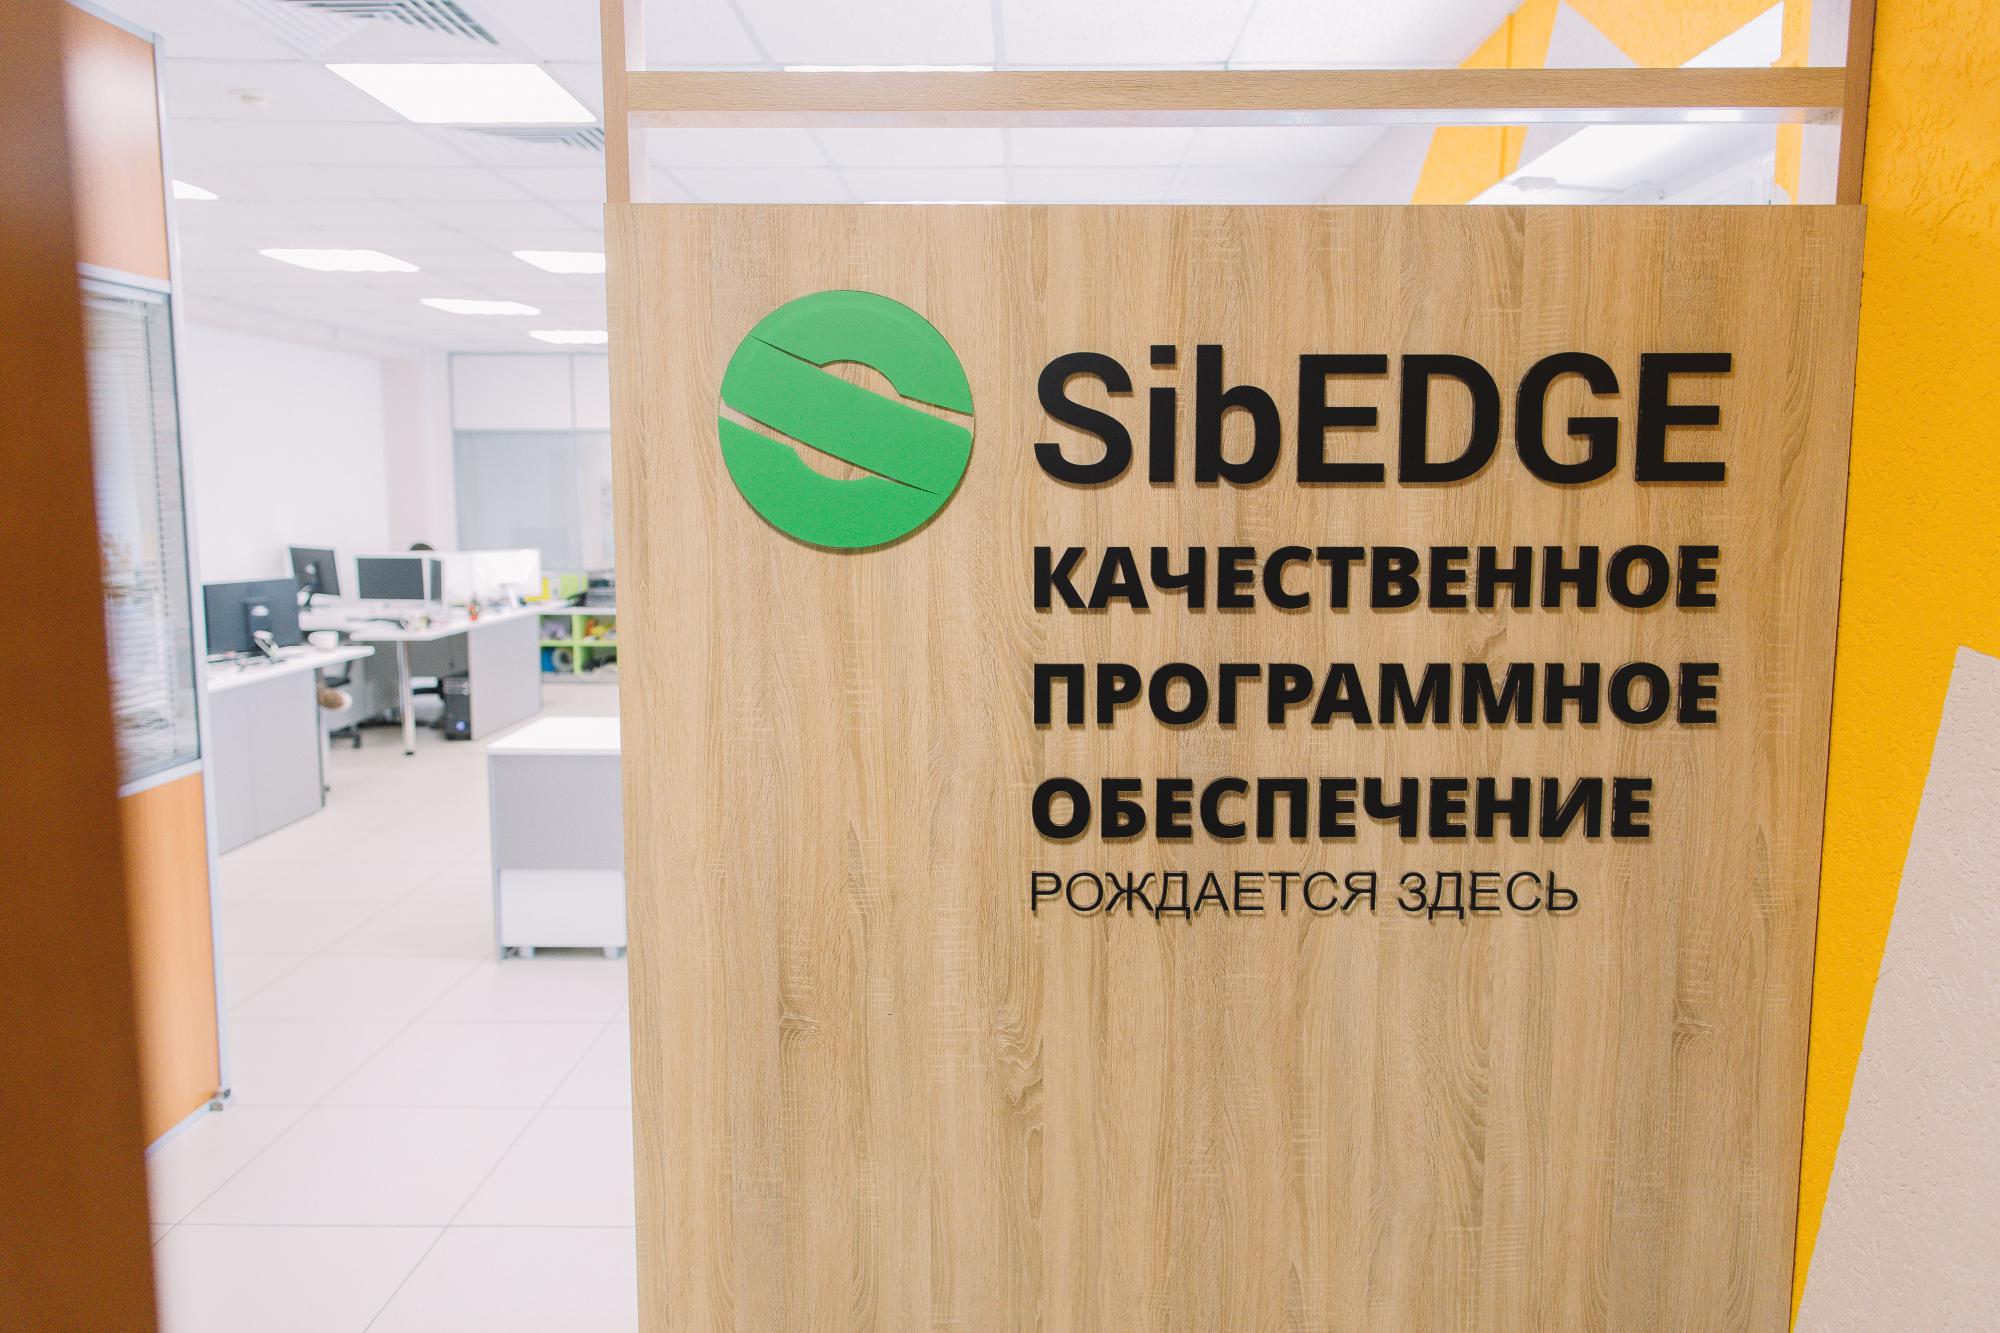 IT, Томские новости, стартап приложение сибэдж SibEDGE Матч поинт где искать инвестора В Томске сделали стартап для стартапов